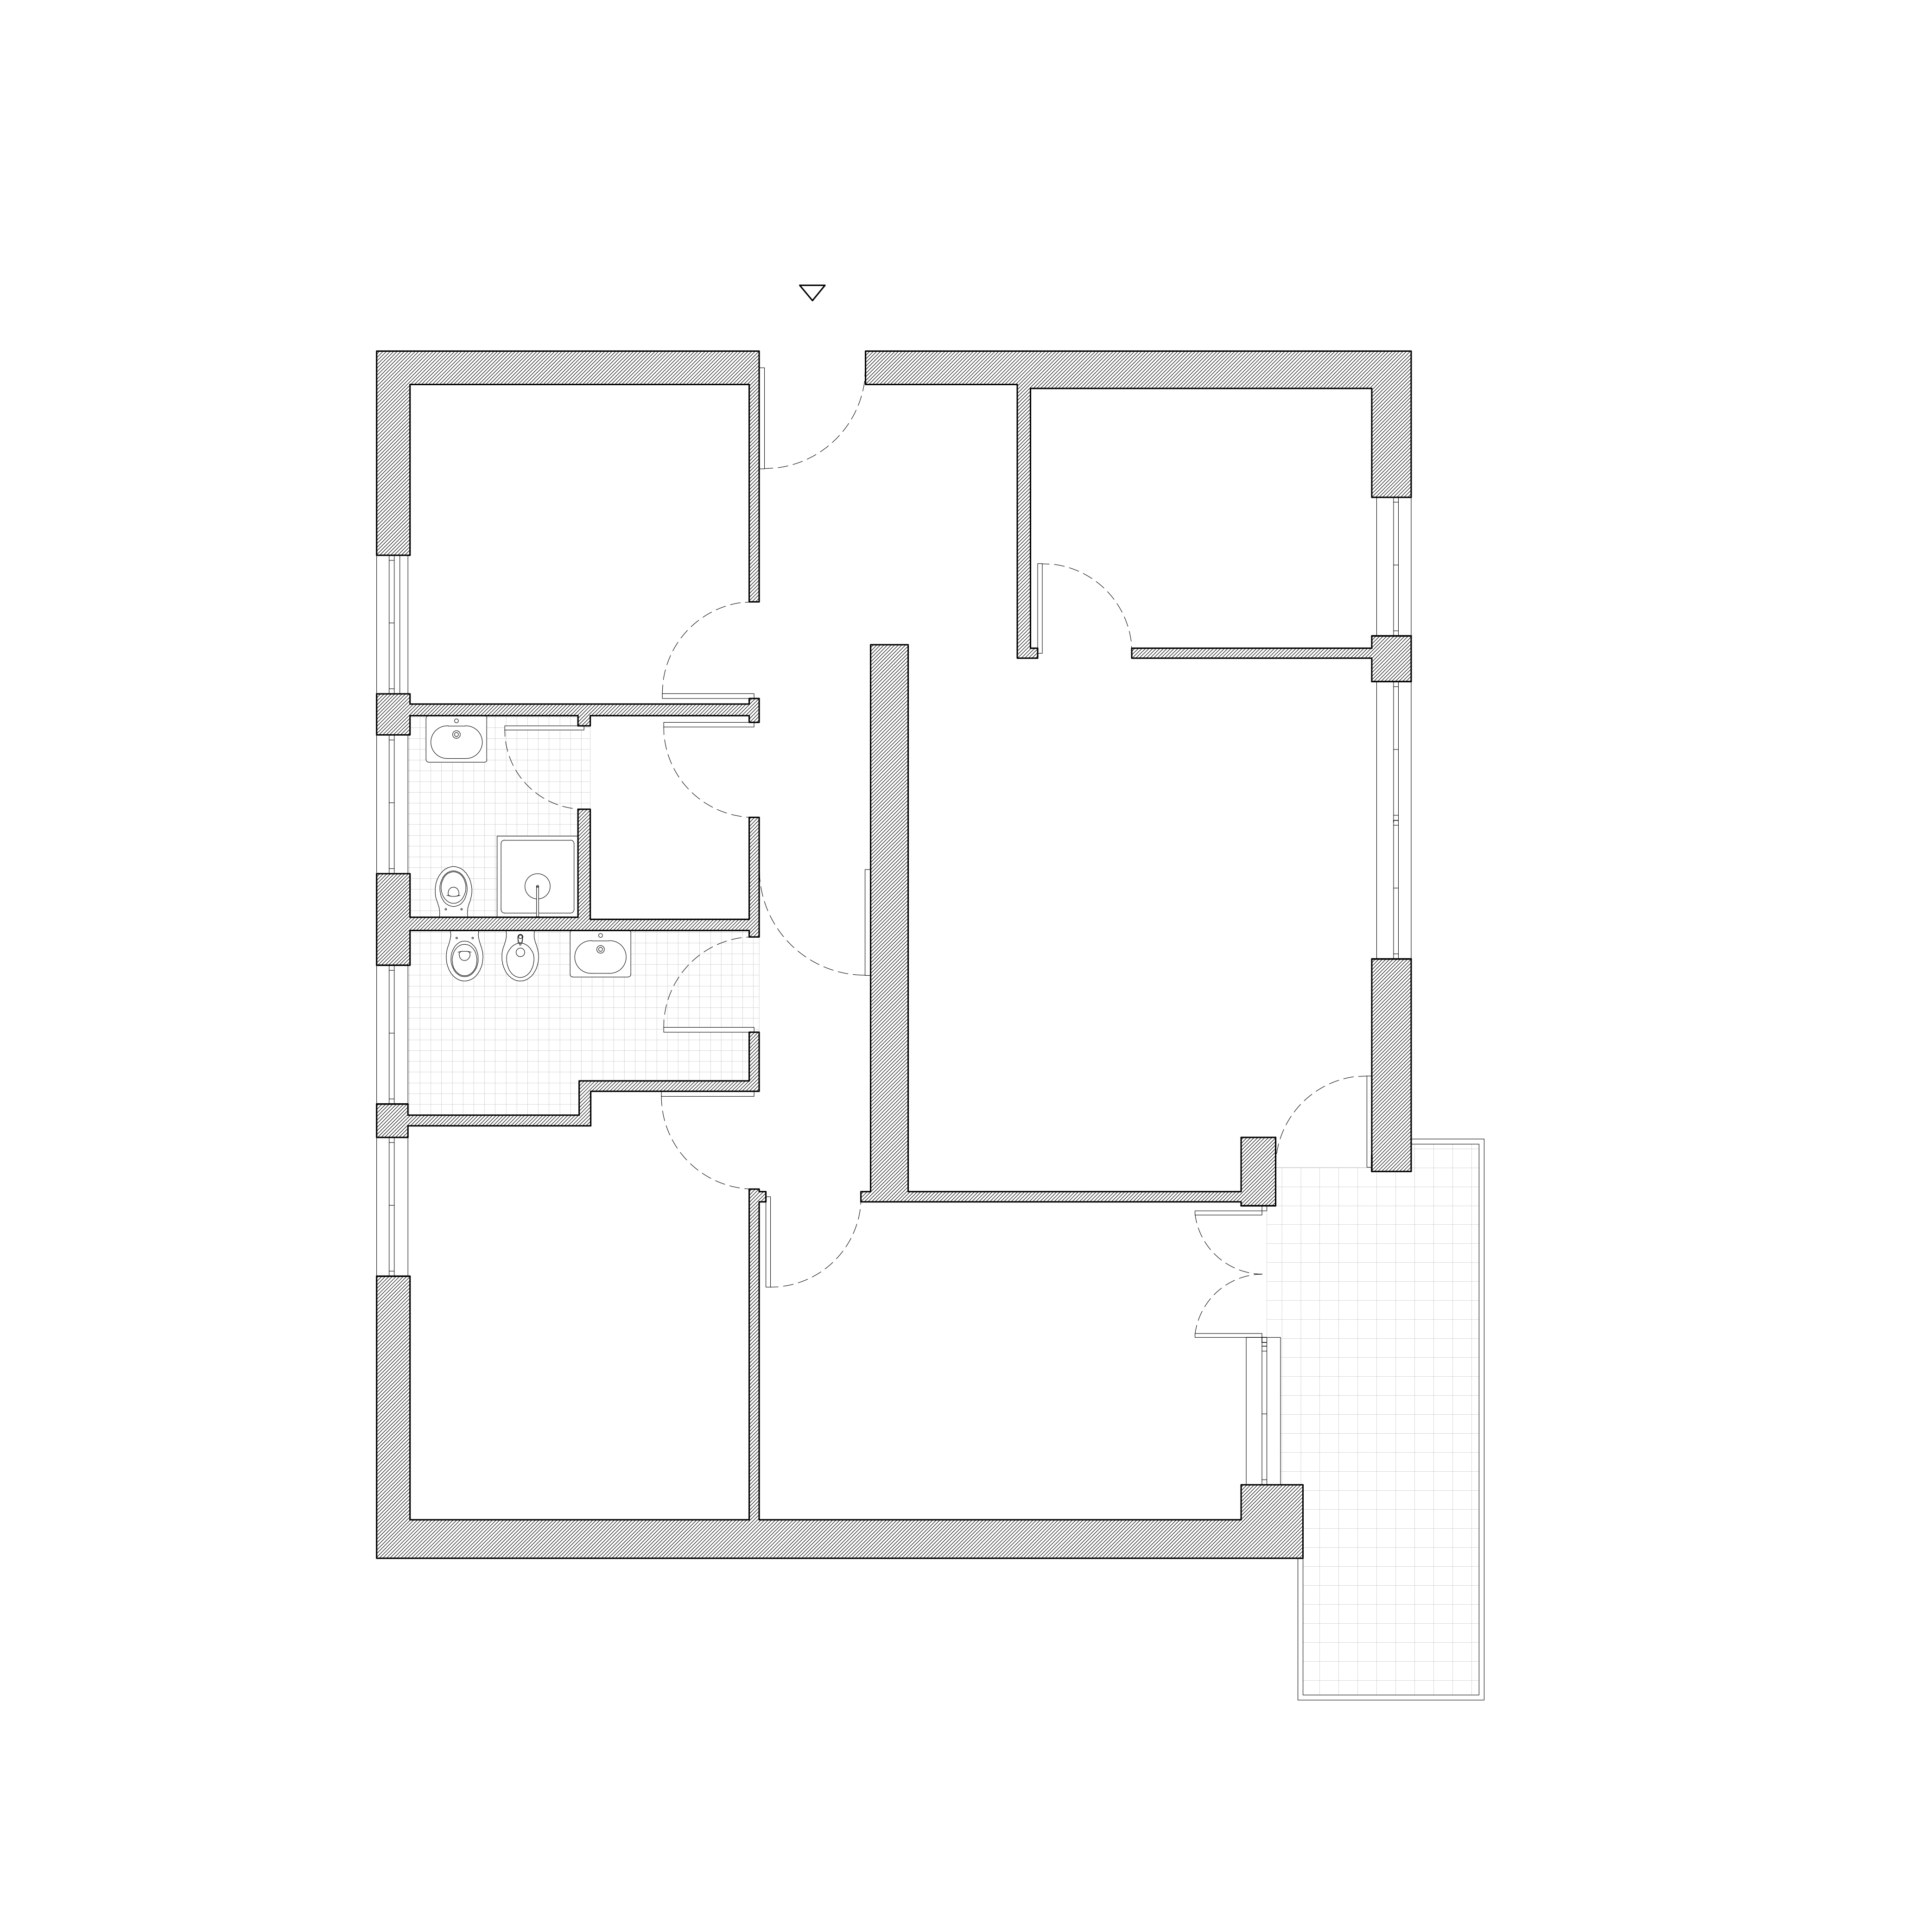 Canazei apartment existing plan